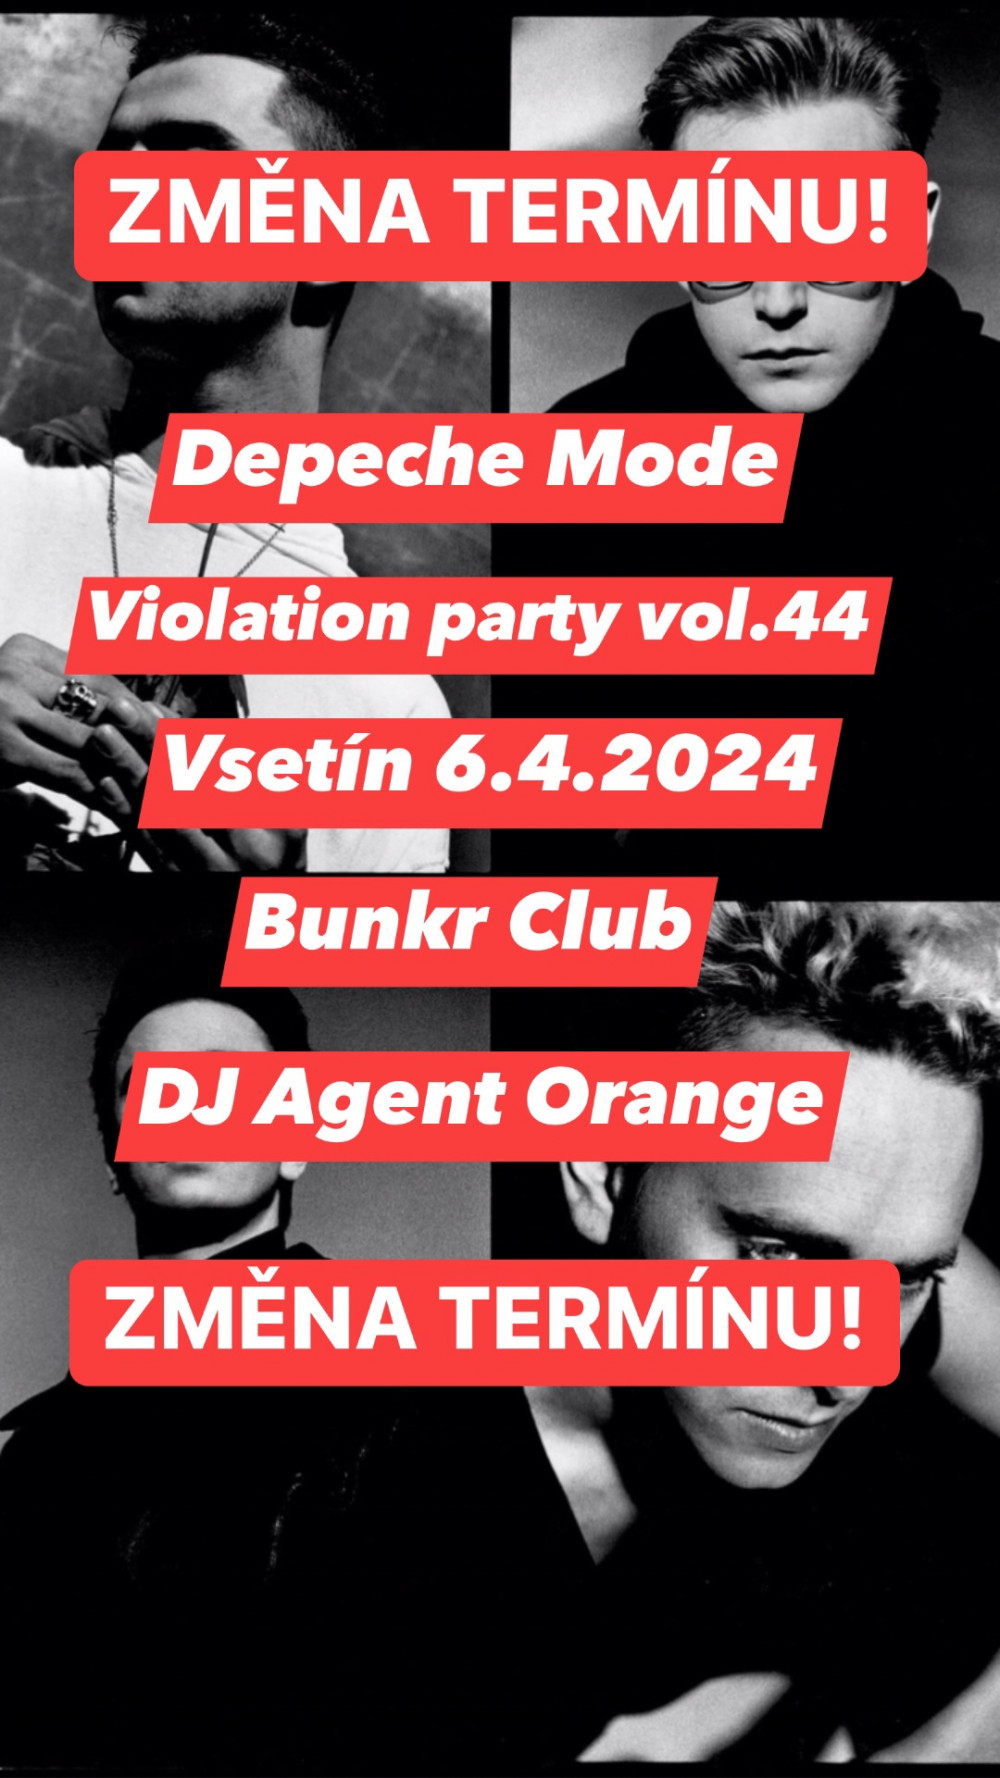 Vsetín: Depeche Mode Violation Party vol.44